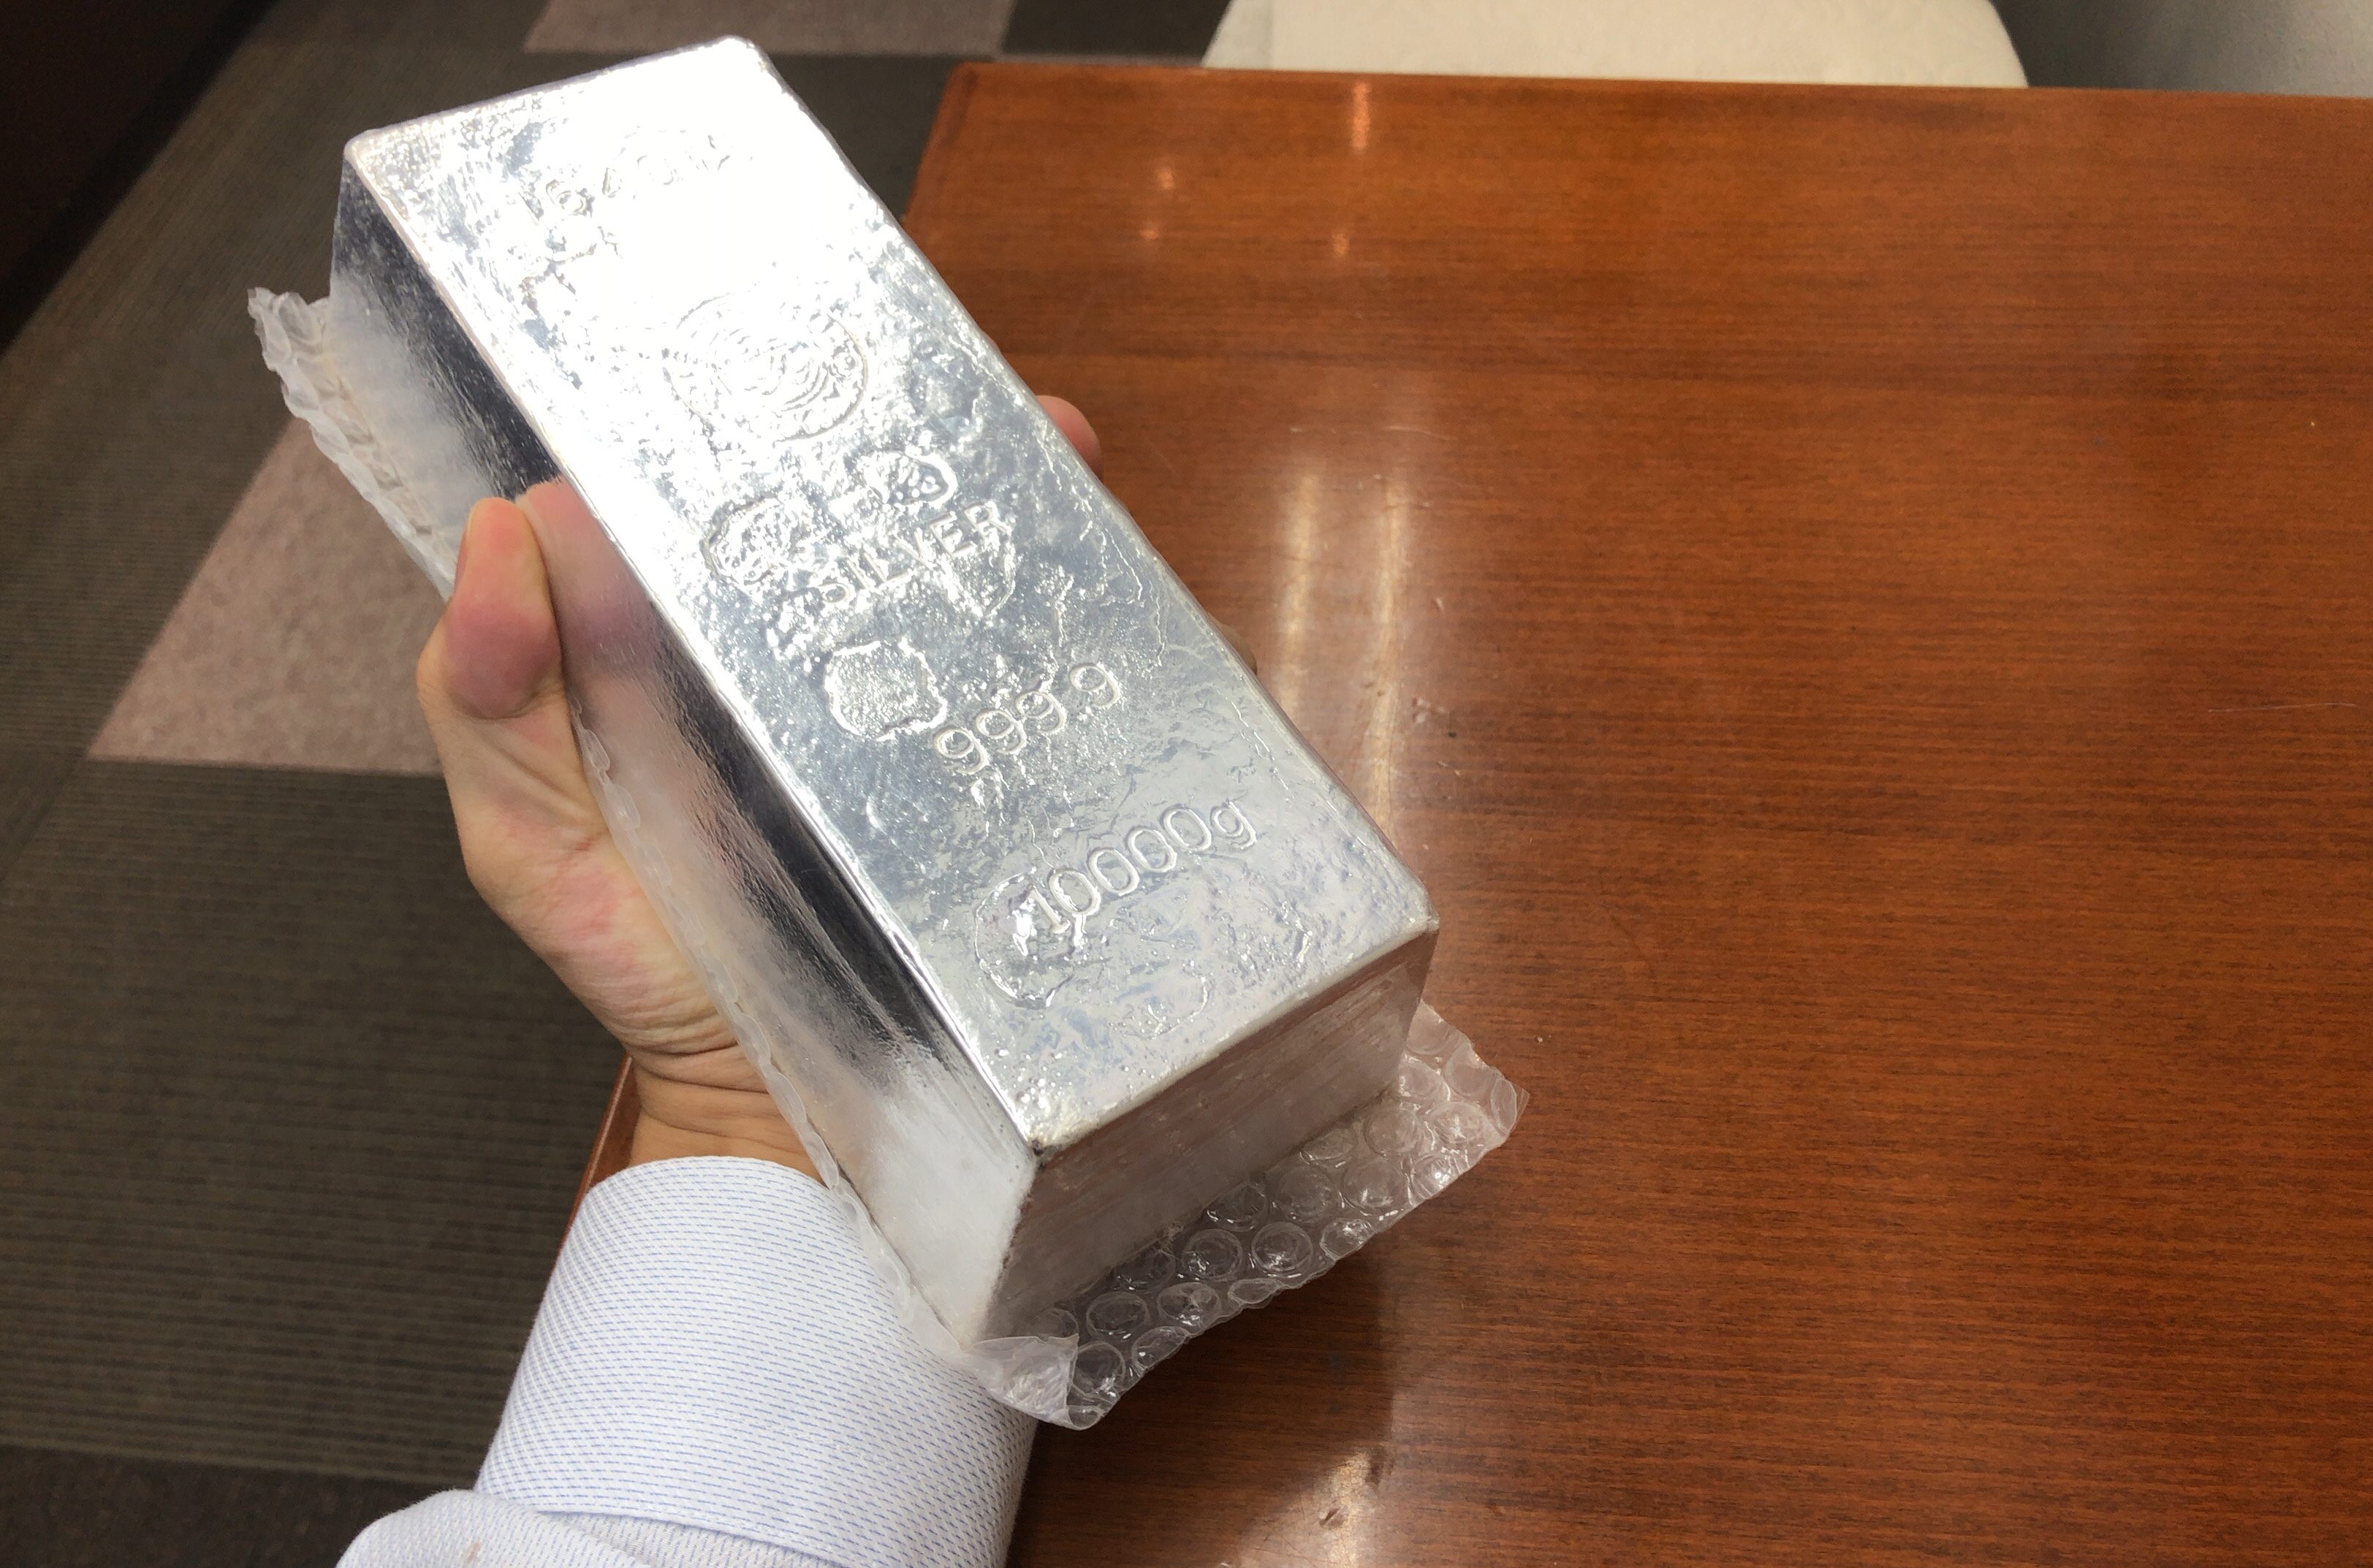 「石福金属興業」 1kg (500g×2) 銀地金(インゴット)